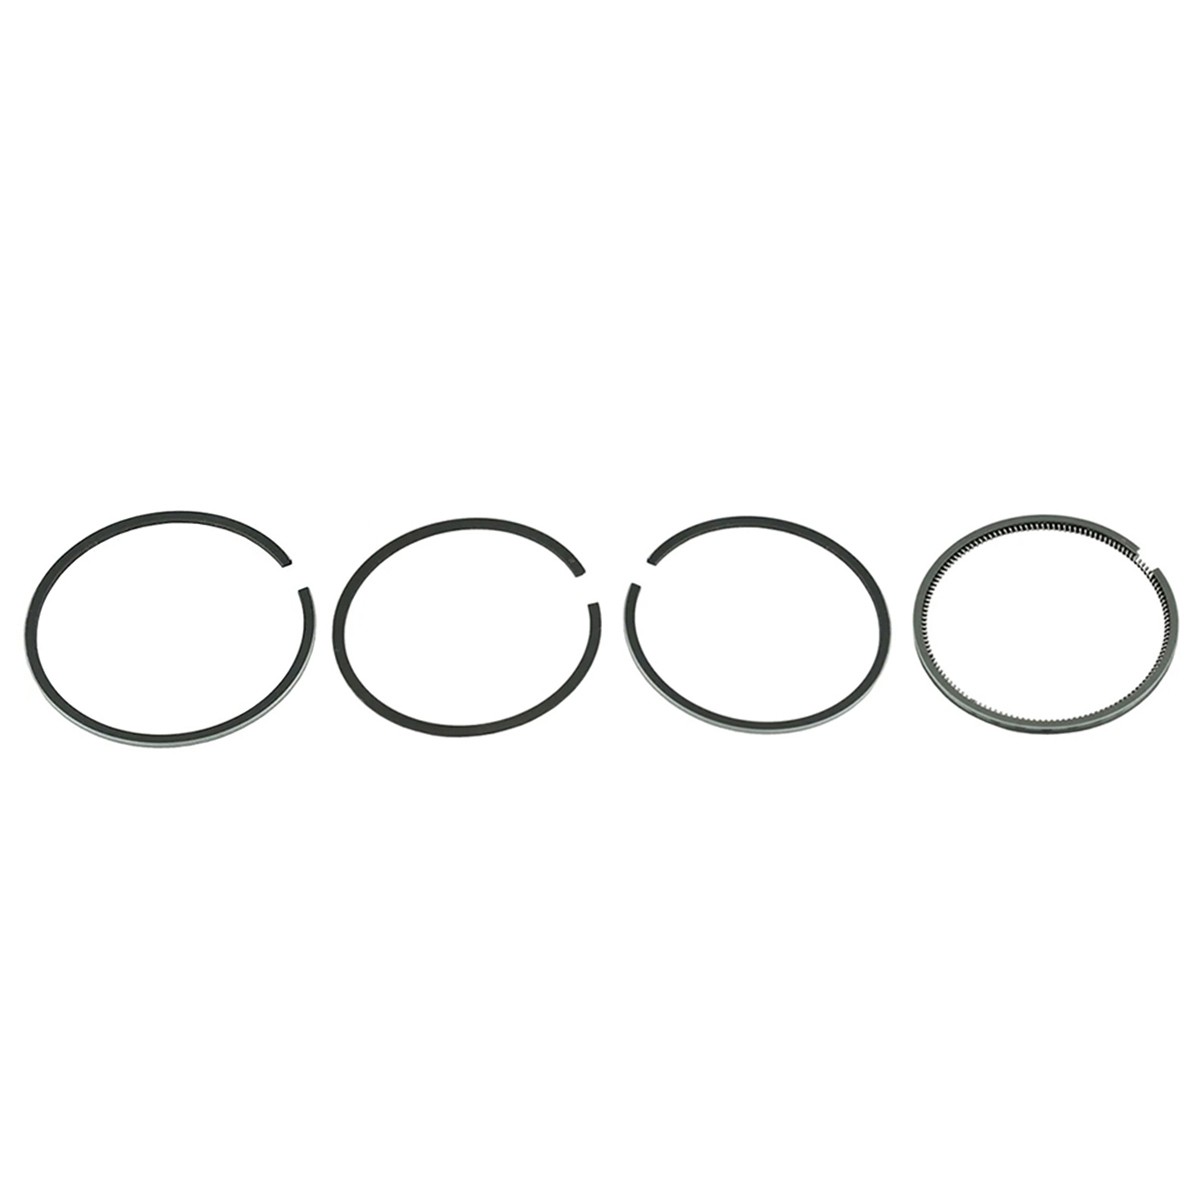 Pístní kroužky / Ø 95 mm / 2,50 x 2,00 x 2,00 x 4,50 mm / Toyosha S135 / Hinomoto E25/E250 / 2701-3110-000 / 7-26-100-05